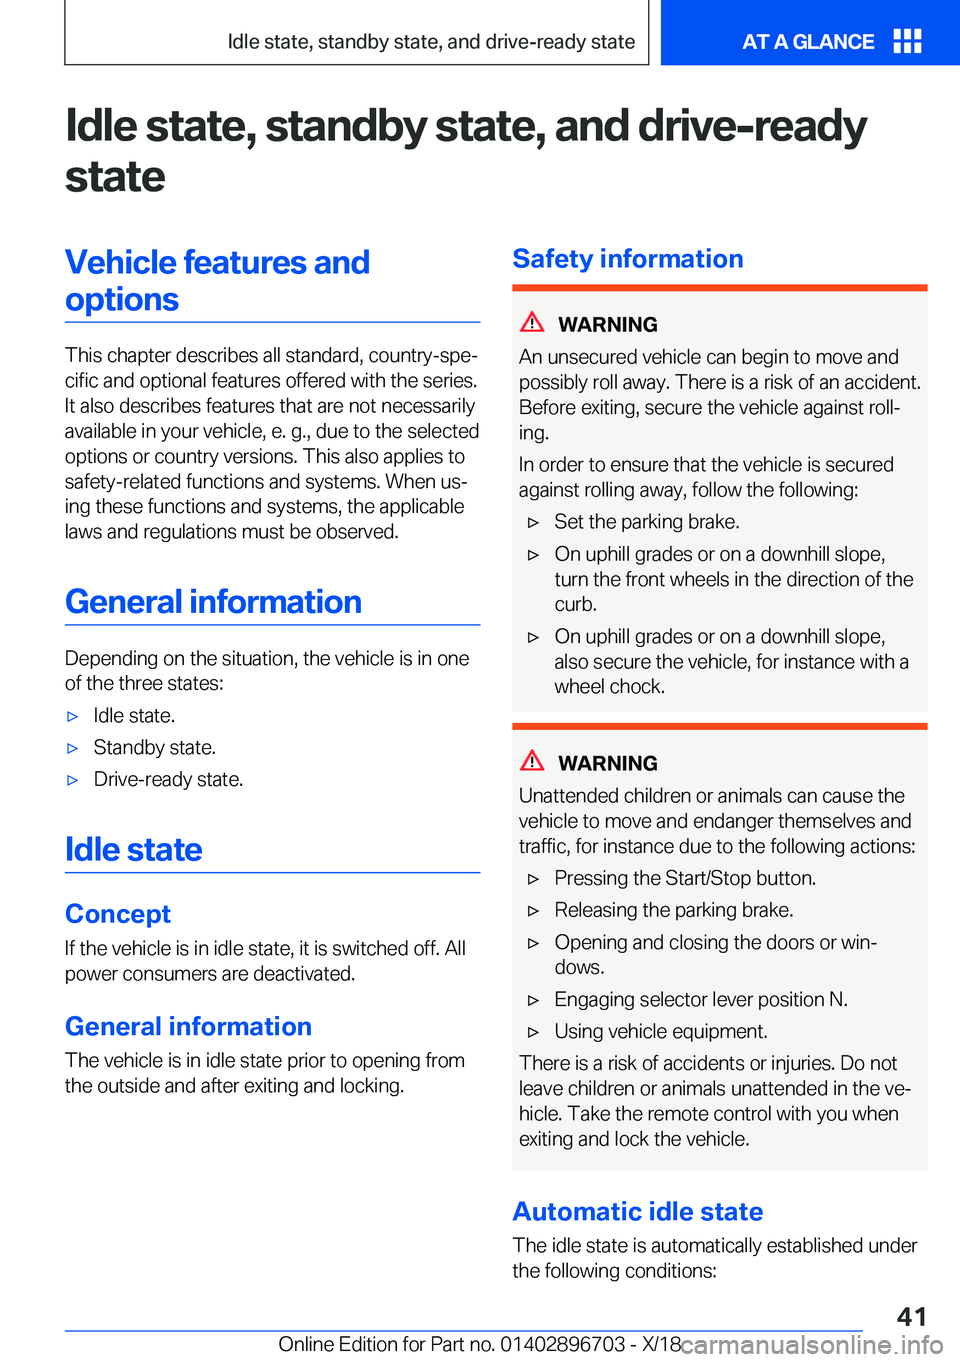 BMW X3 2019 Service Manual �I�d�l�e��s�t�a�t�e�,��s�t�a�n�d�b�y��s�t�a�t�e�,��a�n�d��d�r�i�v�e�-�r�e�a�d�y�s�t�a�t�e�V�e�h�i�c�l�e��f�e�a�t�u�r�e�s��a�n�d�o�p�t�i�o�n�s
�T�h�i�s��c�h�a�p�t�e�r��d�e�s�c�r�i�b�e�s��a�l�